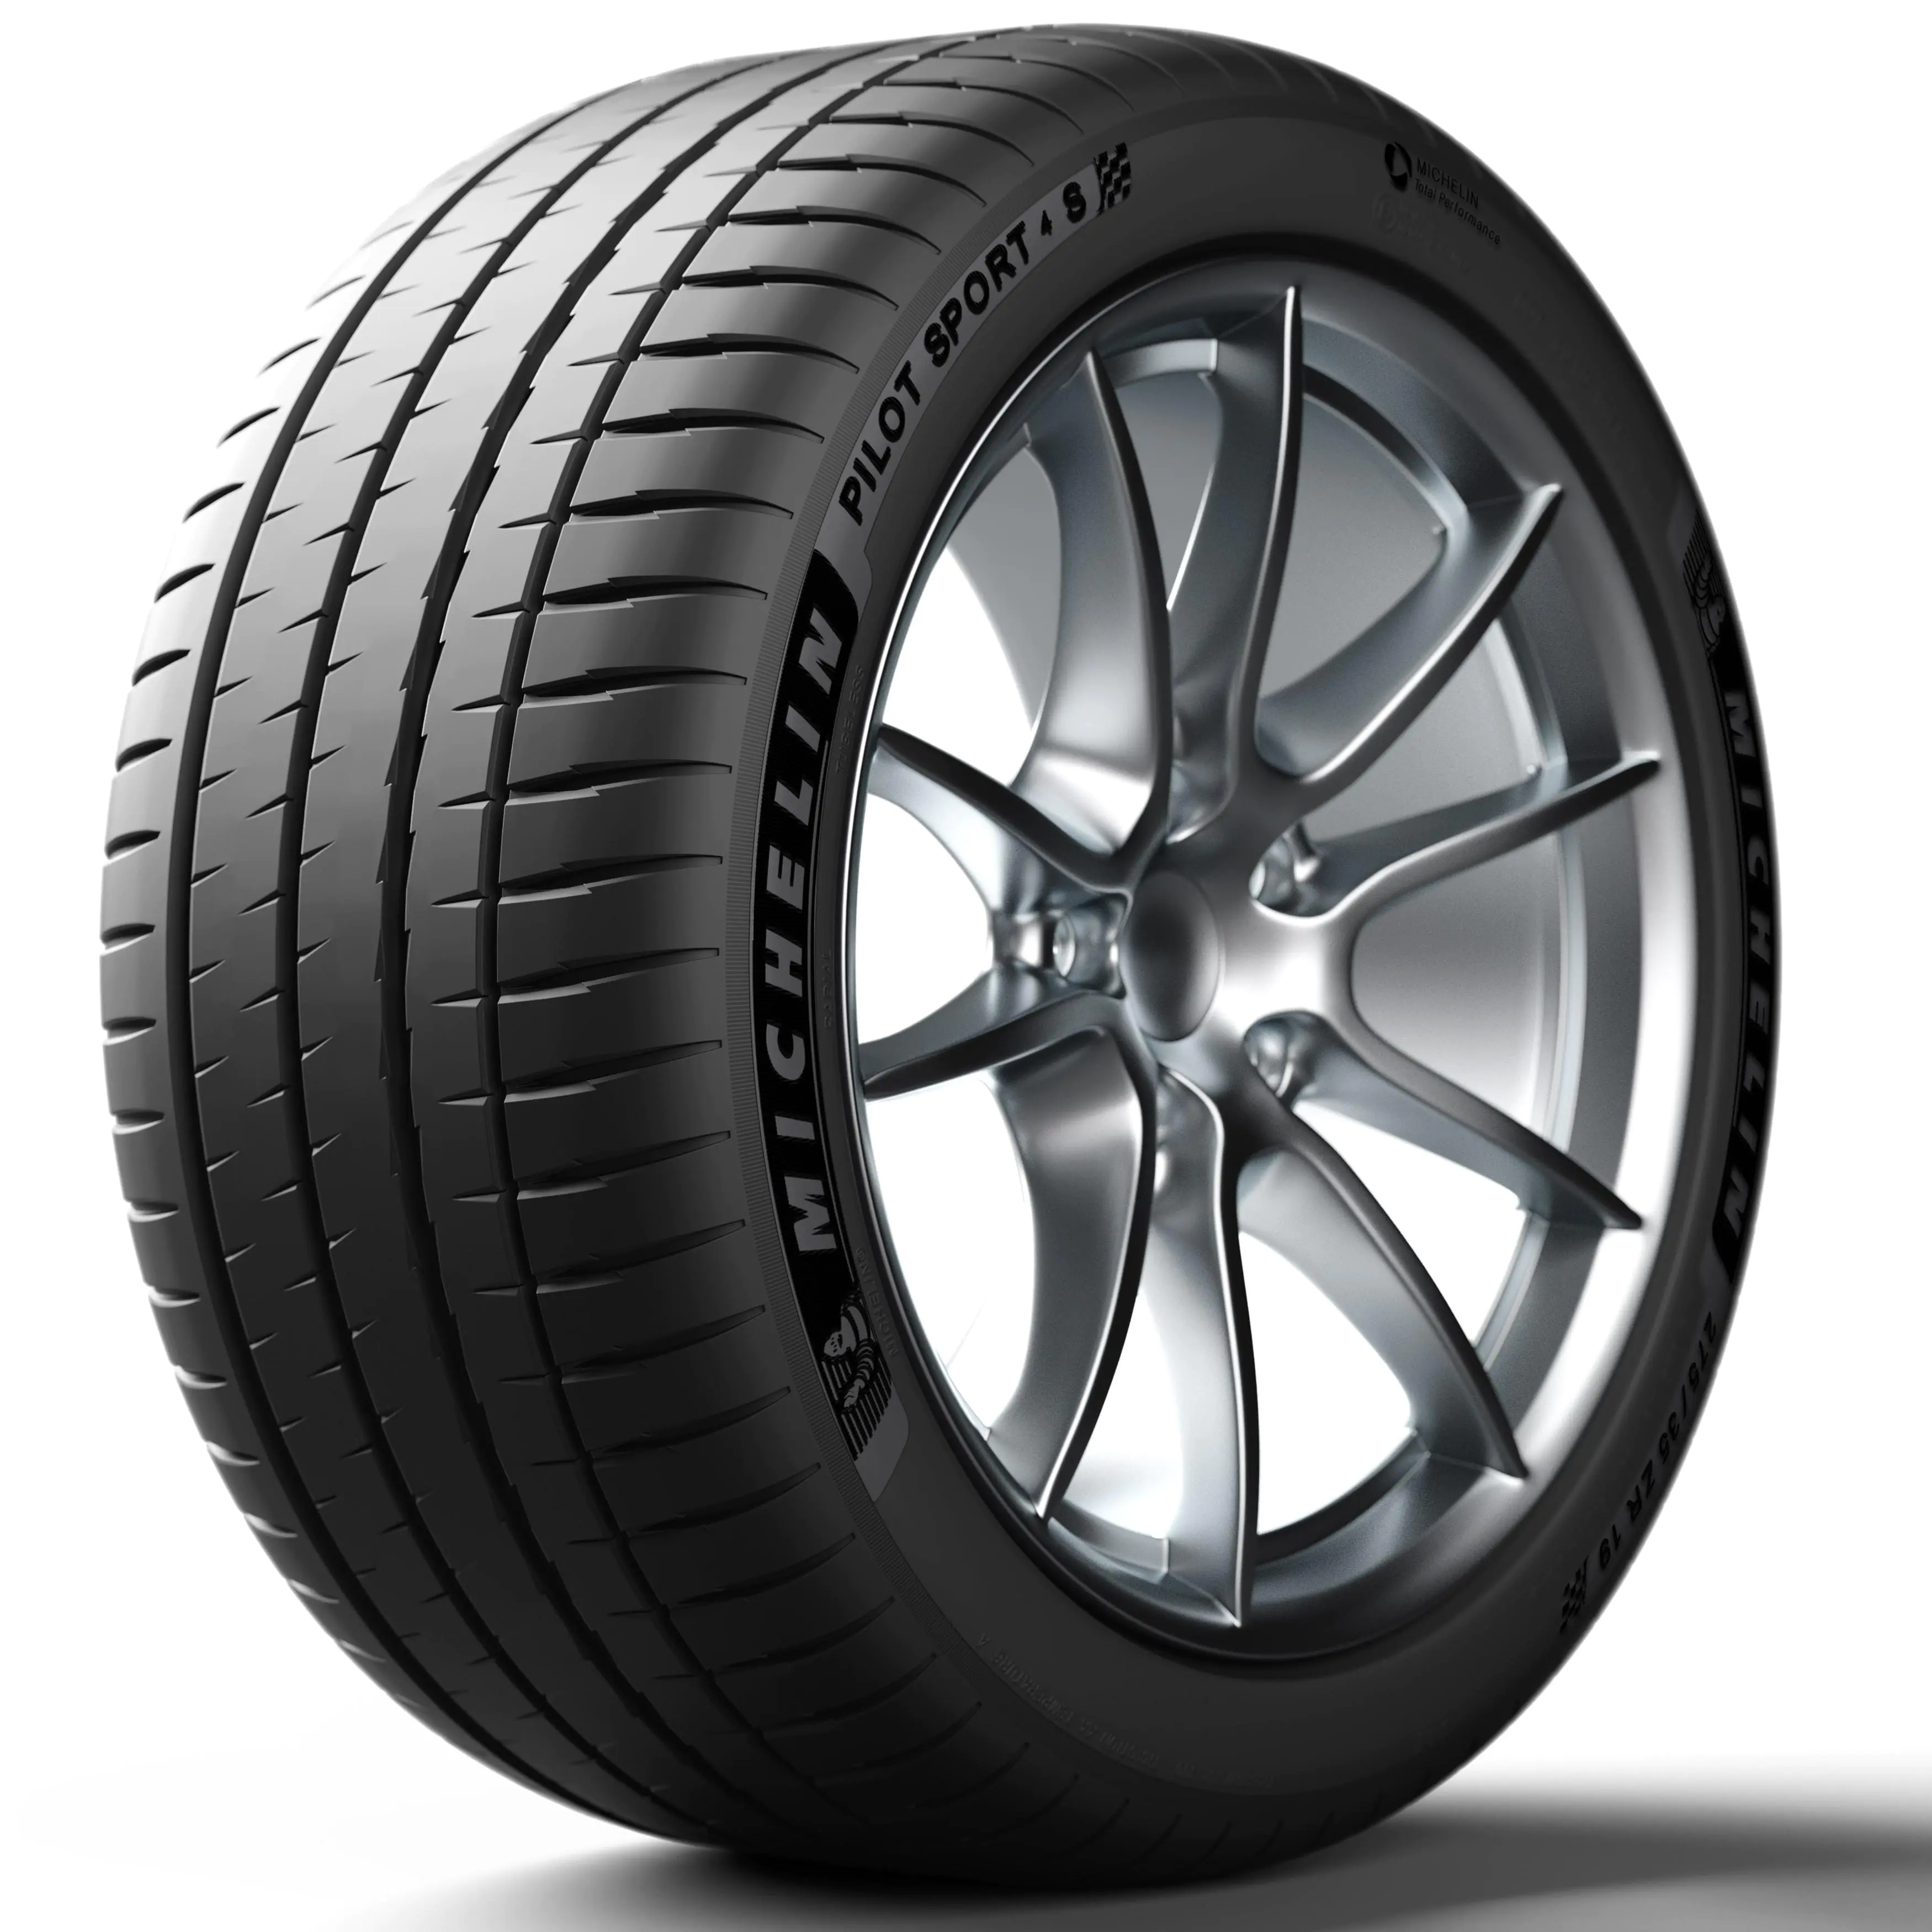 Michelin Michelin 255/35 R19 96Y P.SPORT 4 S XL pneumatici nuovi Estivo 